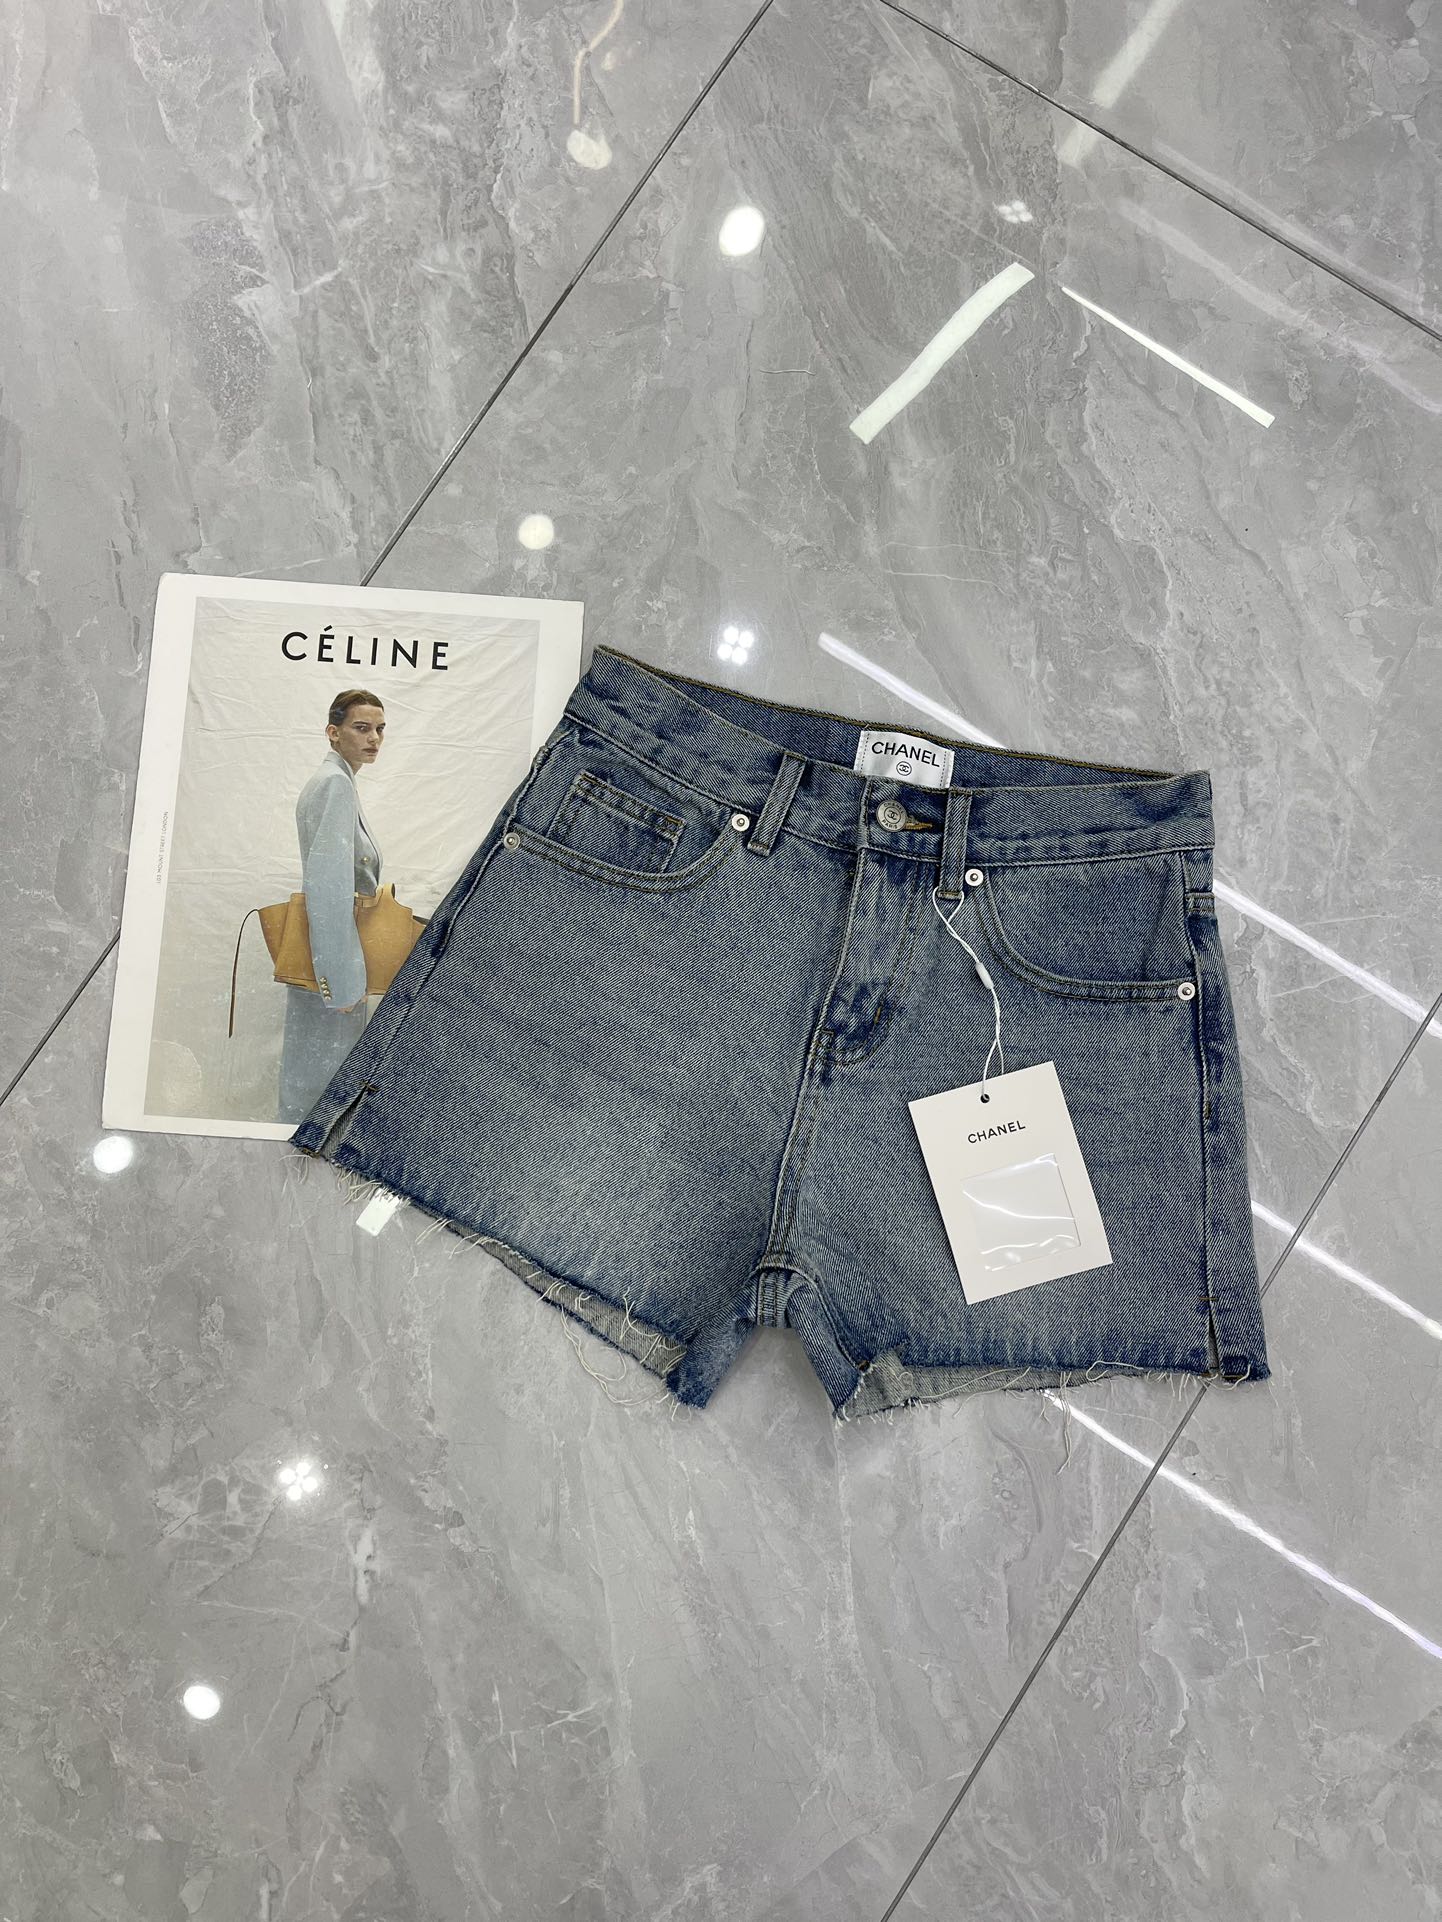 Quelle réplique 1: 1
 Chanel Vêtements Jeans Shorts Bleu Broderie de fleurs Coton Série d’été